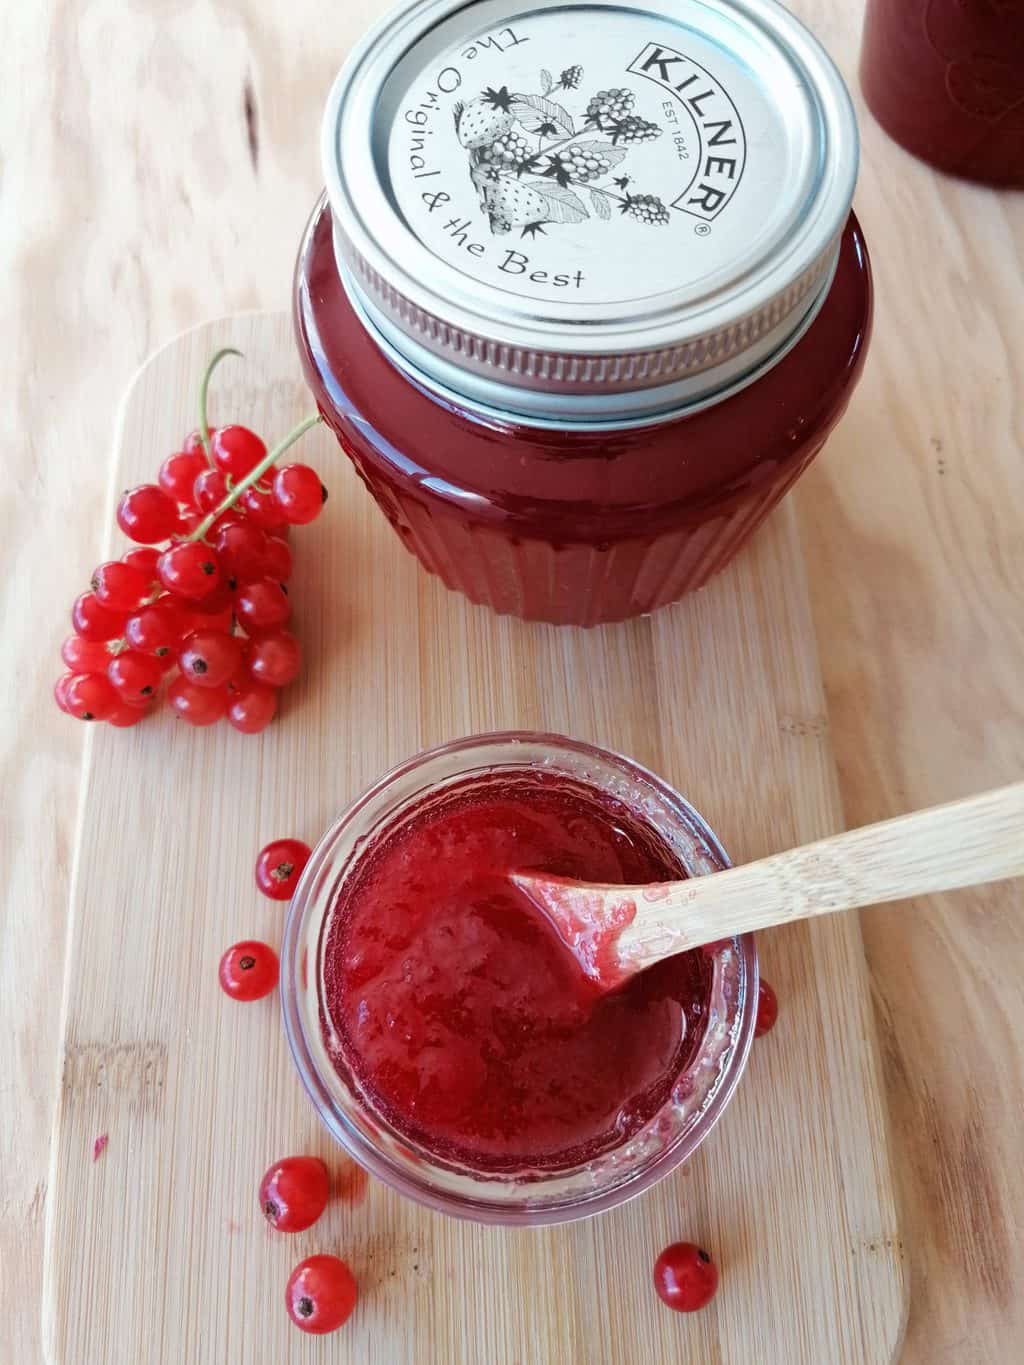 How to make Redcurrant jam